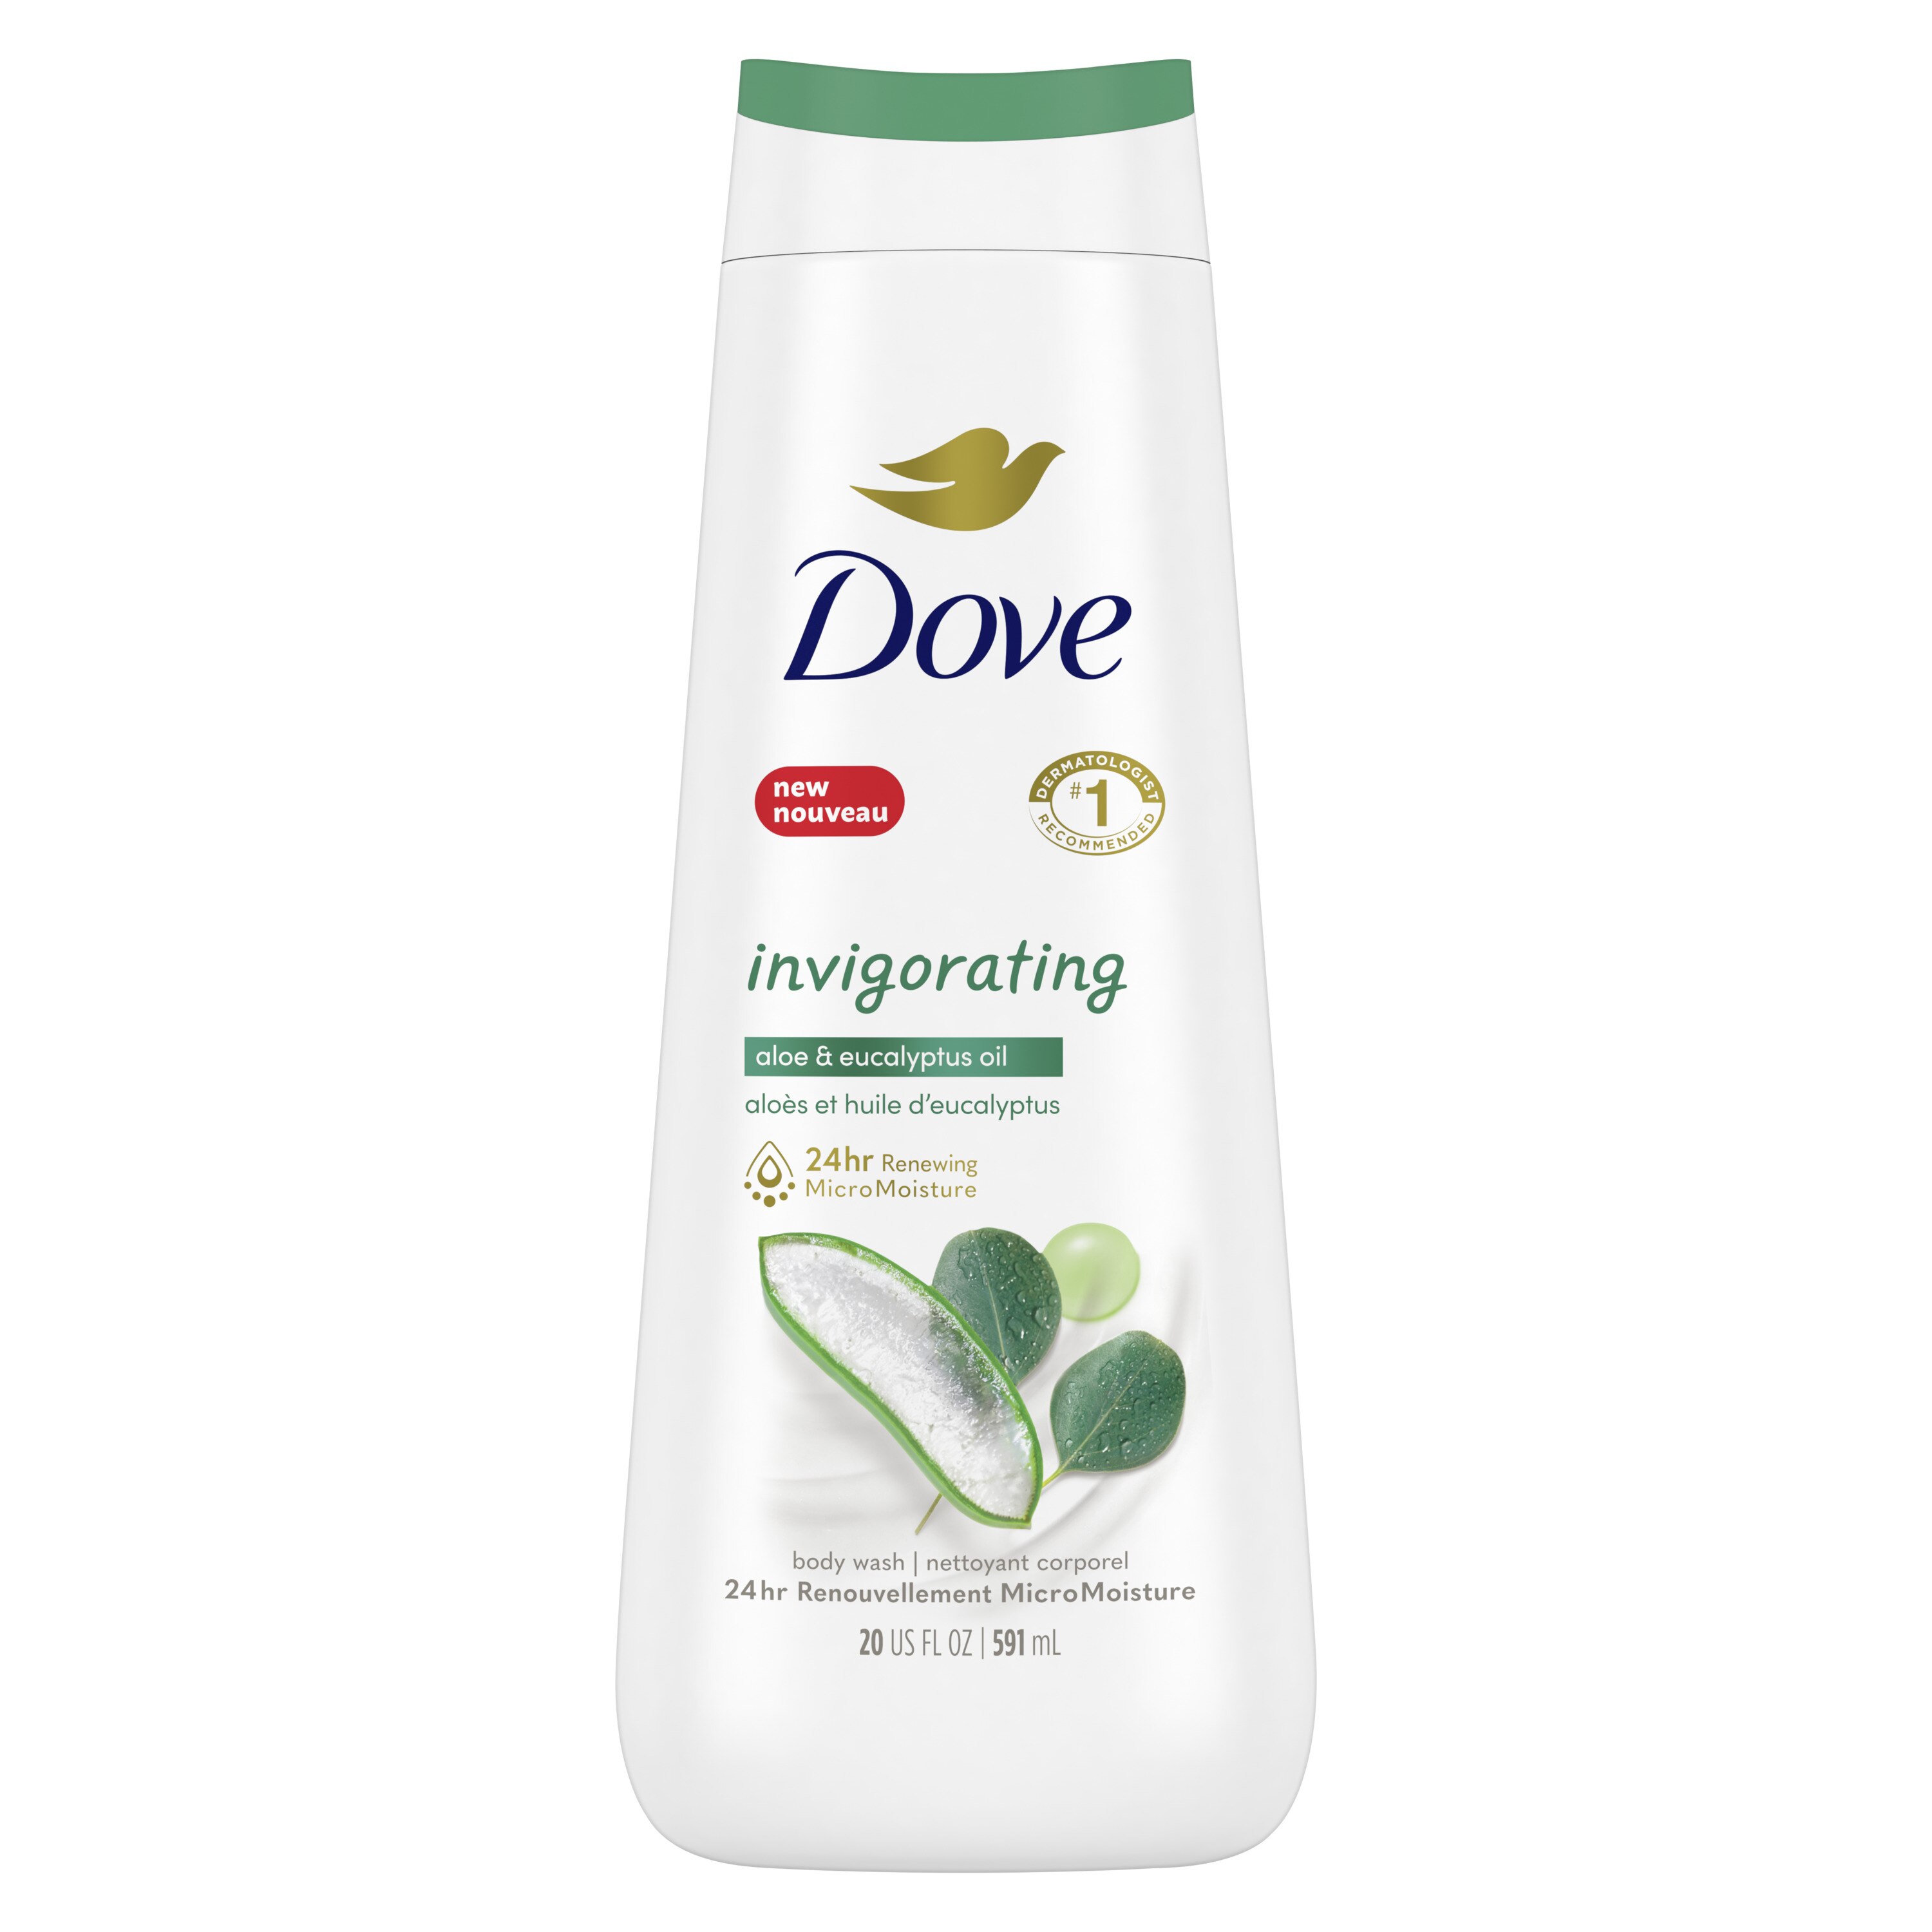 Dove go fresh Pear and Aloe Vera Body Wash, 20 OZ